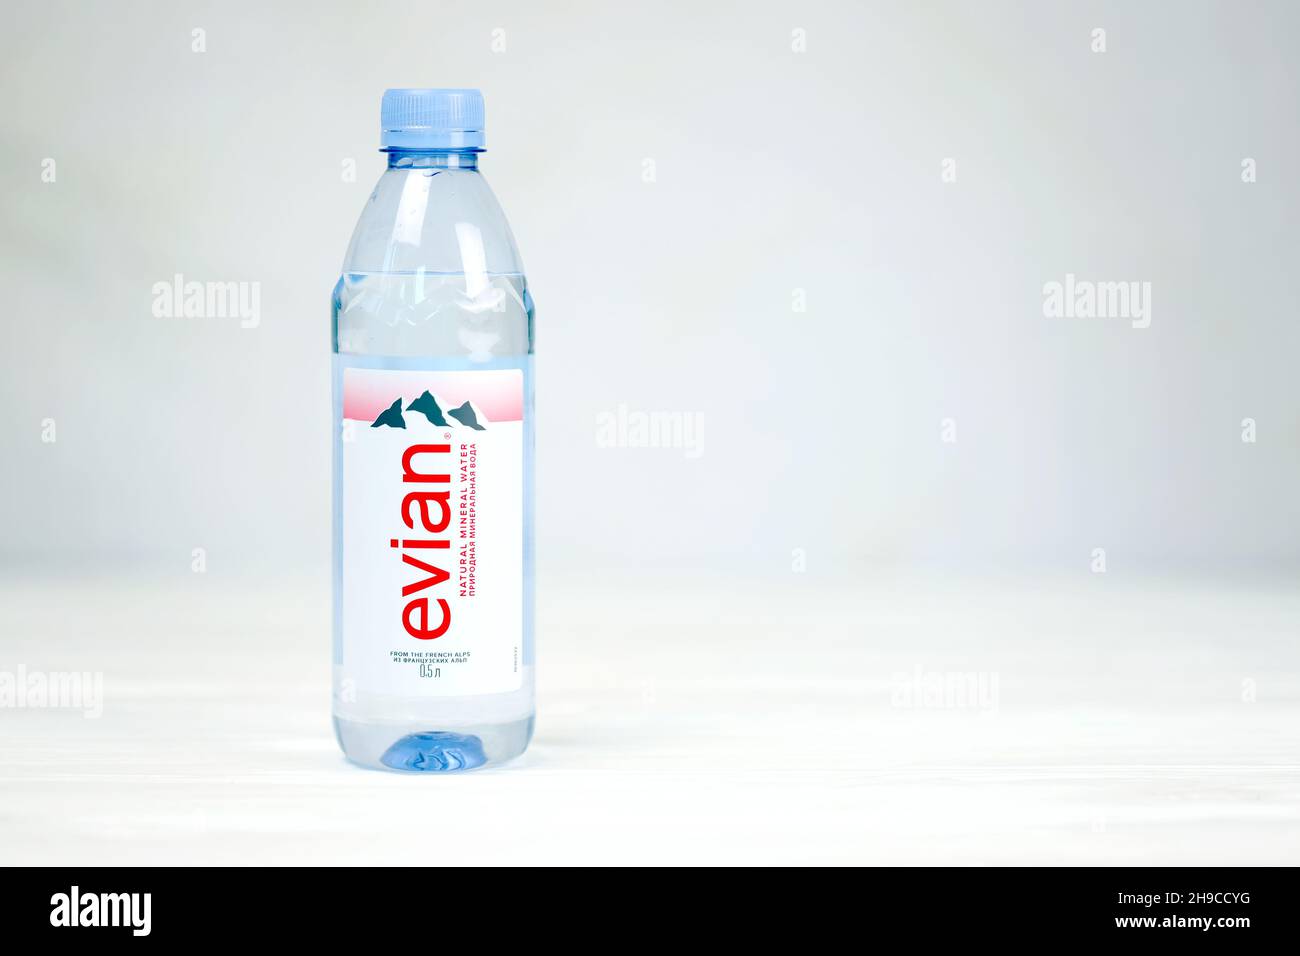 Evian Natural Spring Water- 1L (33.8 Fl oz) (12 Bottles per Case) – All  County Beverage